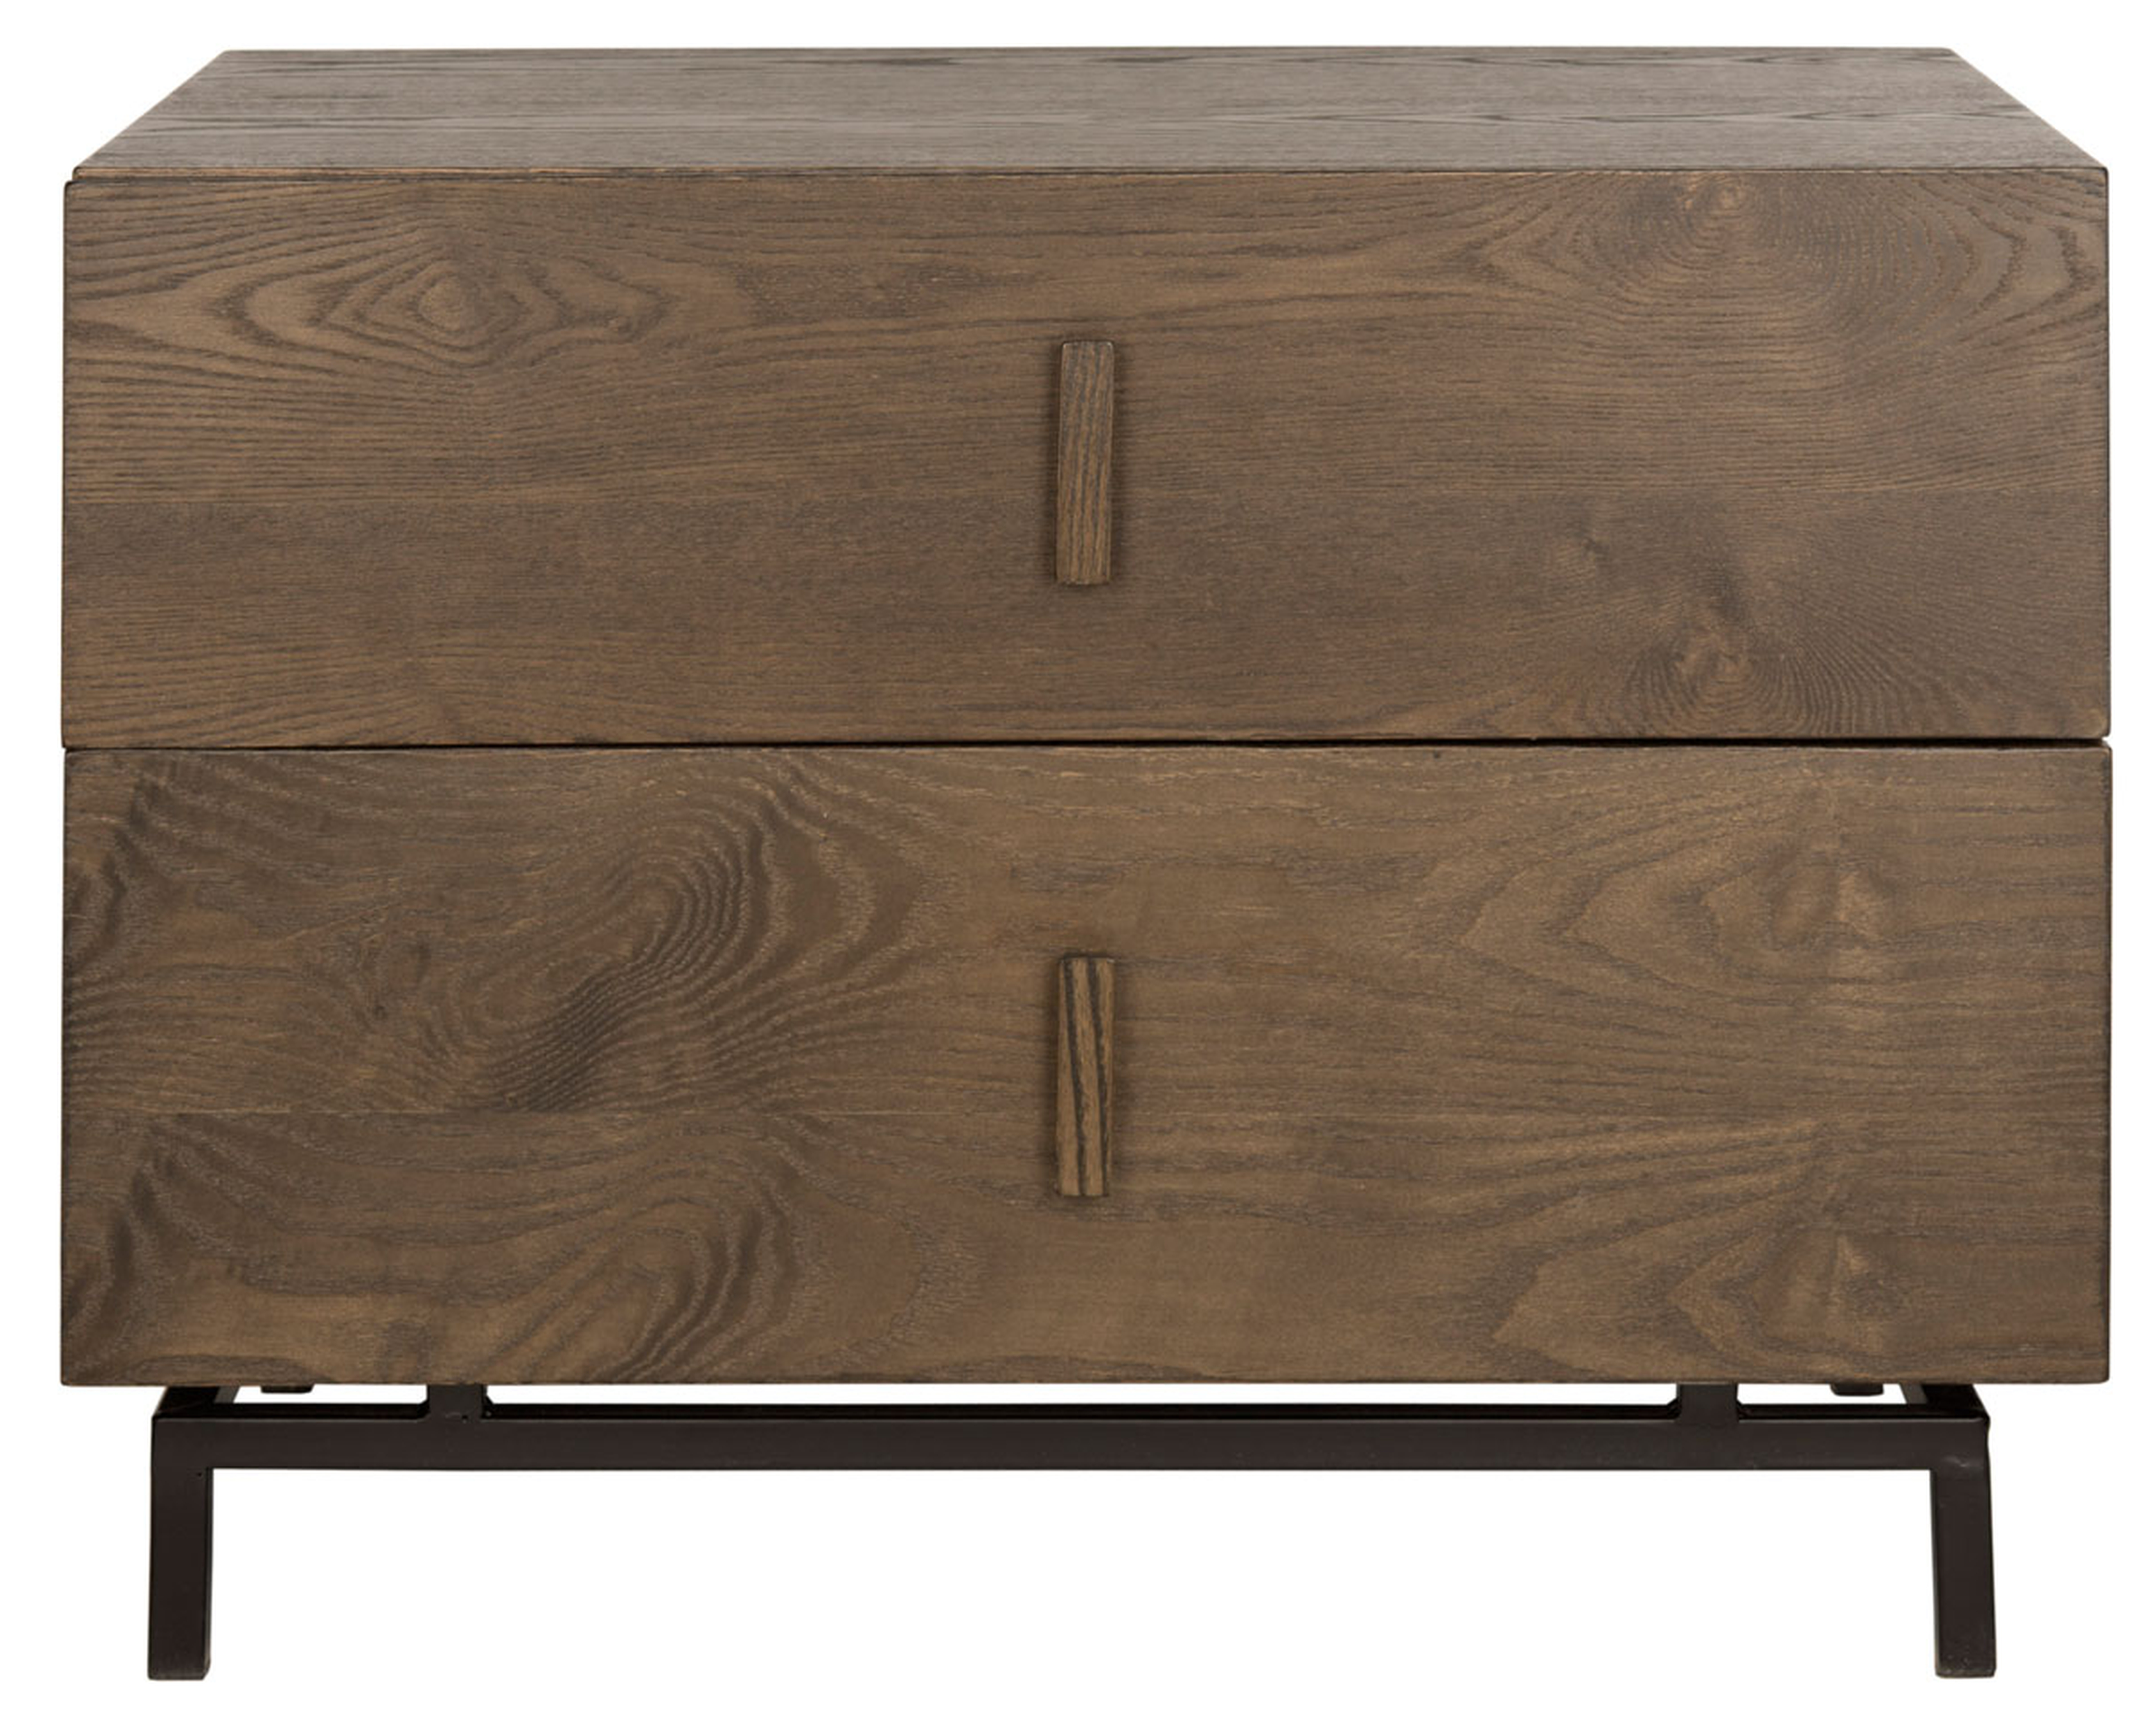 Herschel Mid Century Scandinavian Lacquer Two Drawer Cabinet - Dark Brown/Black - Safavieh - Arlo Home